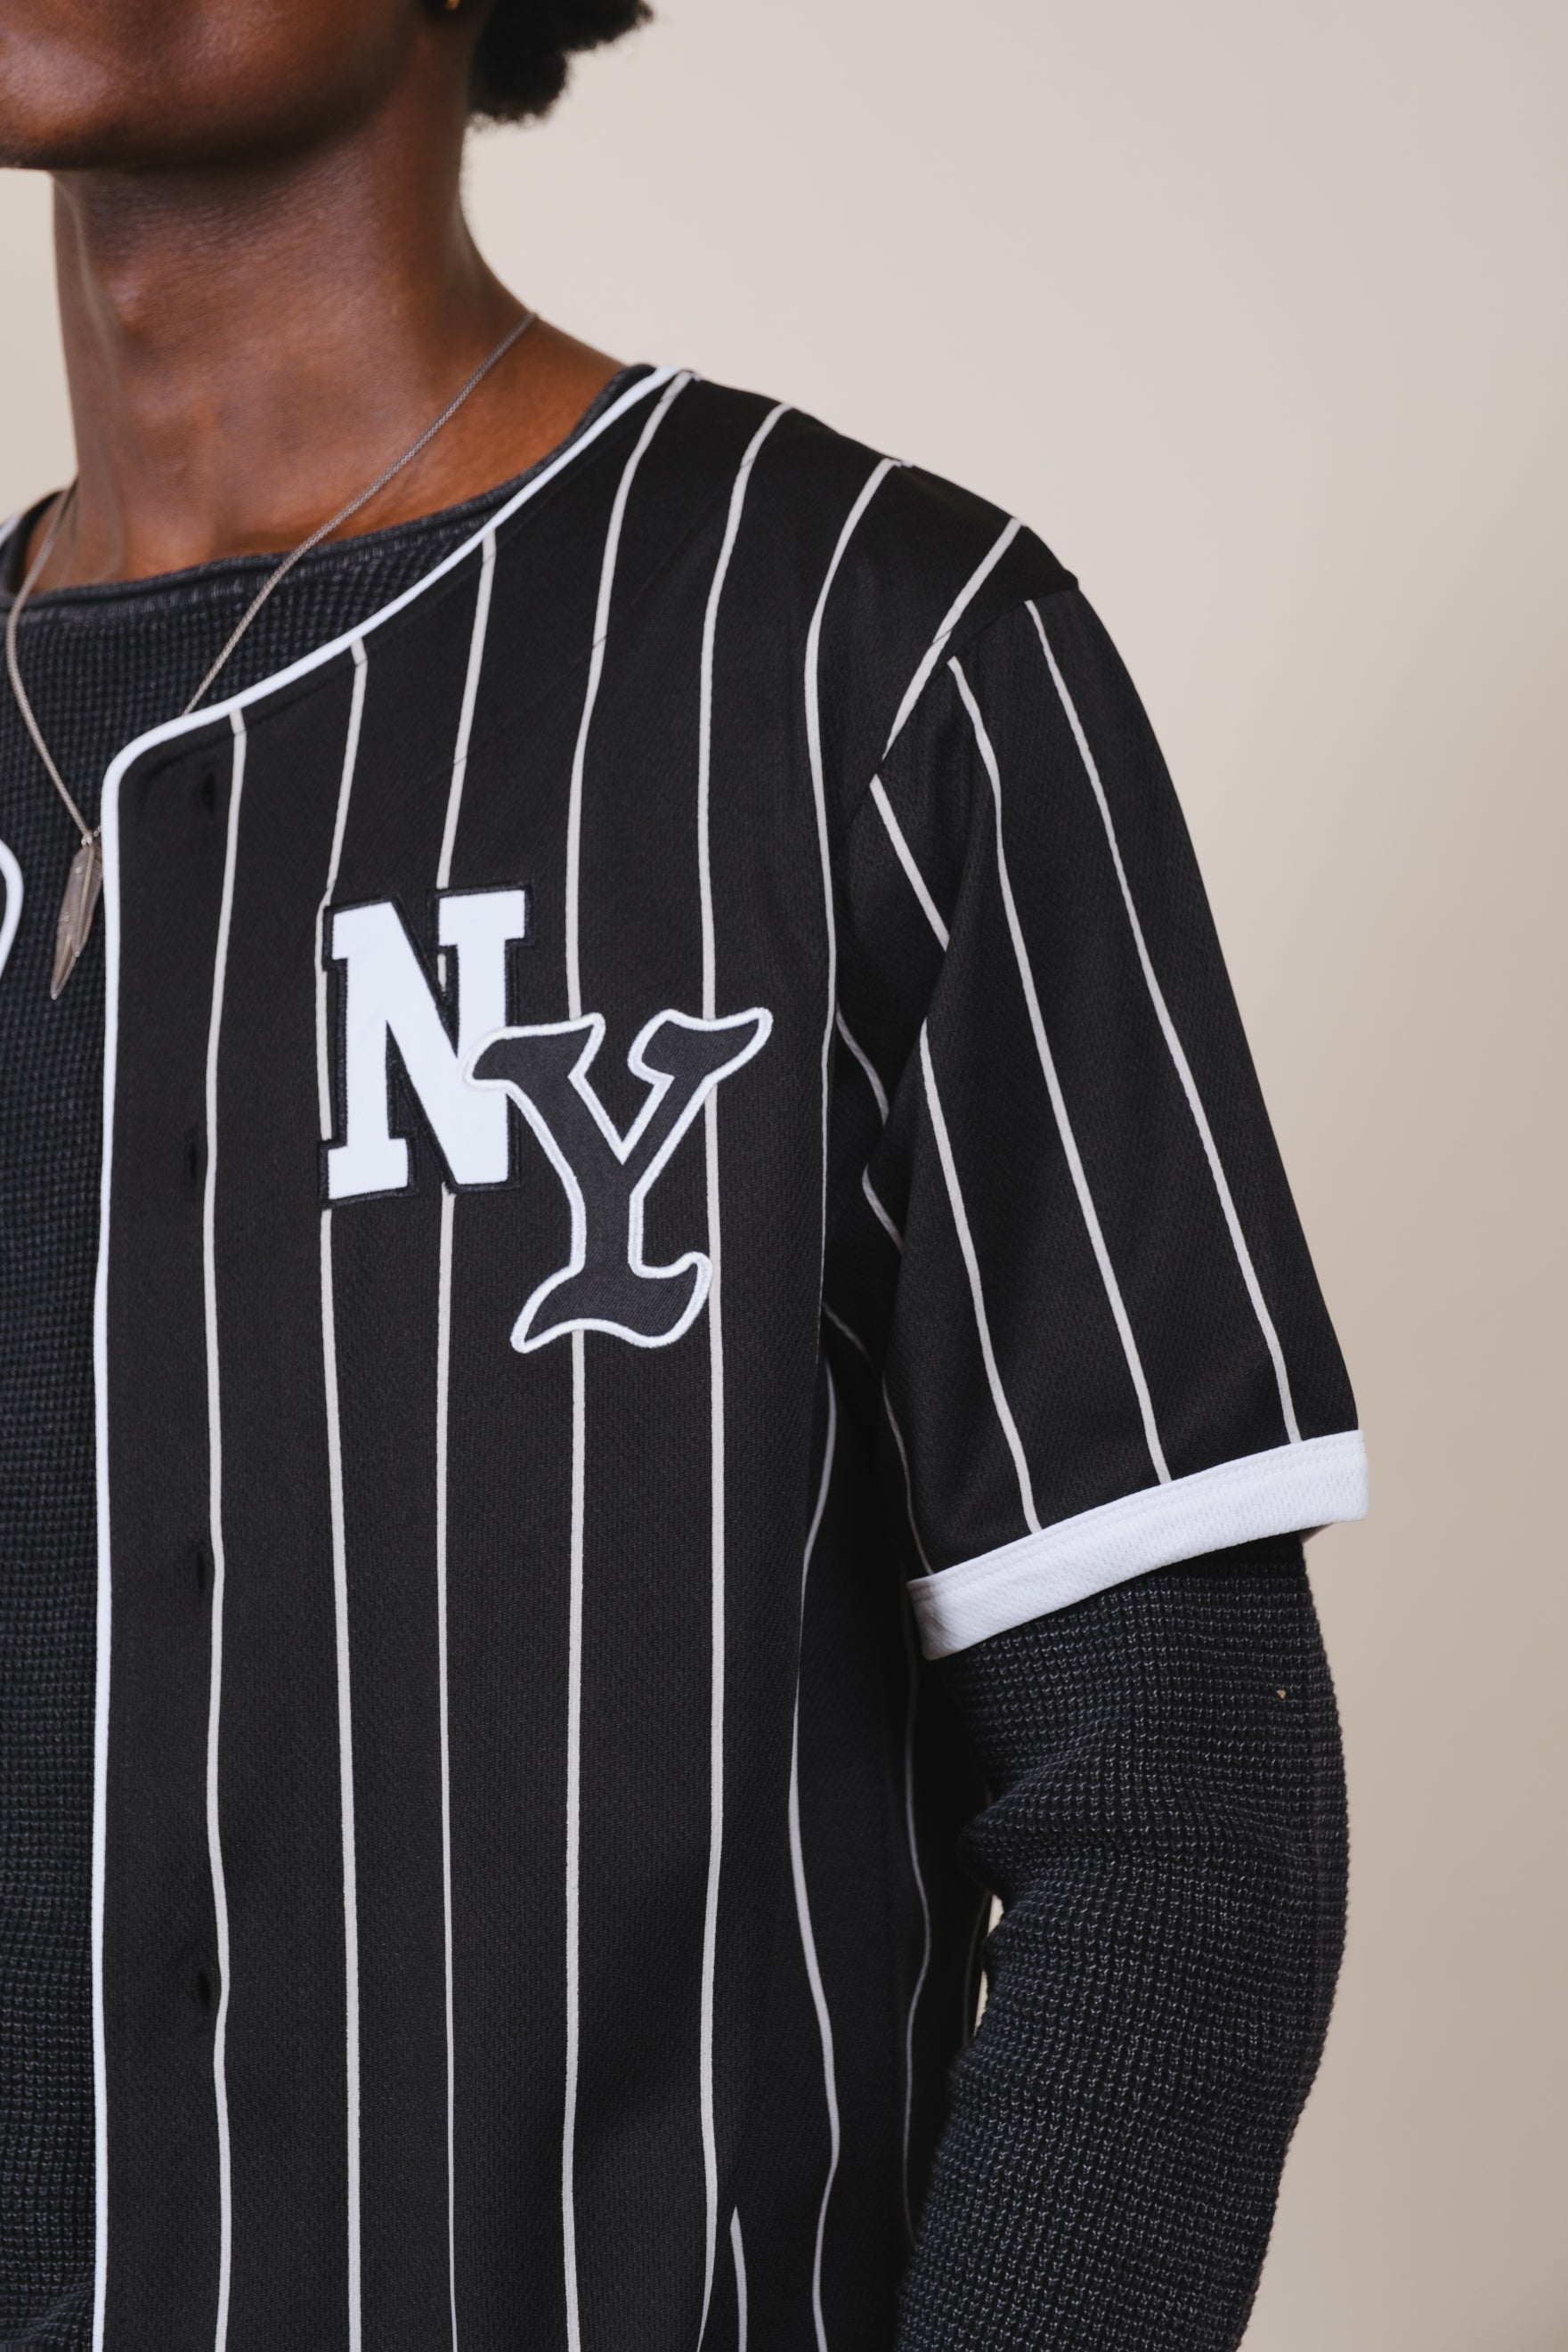 NY Pinstripe Baseball Jersey| Brooklyn Cloth